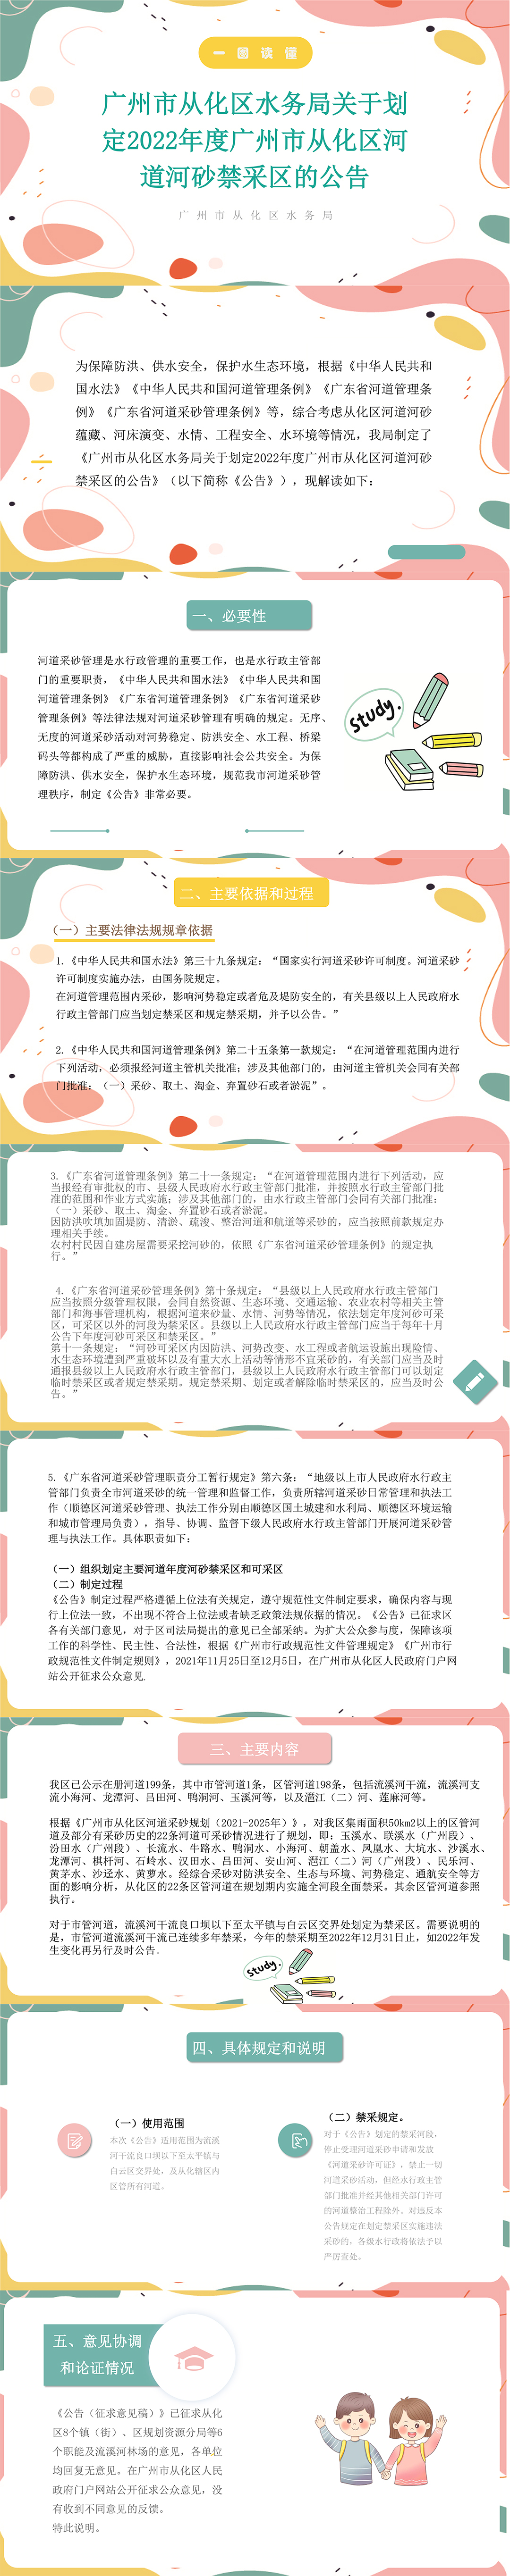 广州市从化区水务局关于划定2022年度广州市从化区河道河砂禁采区的公告-9(1).jpg